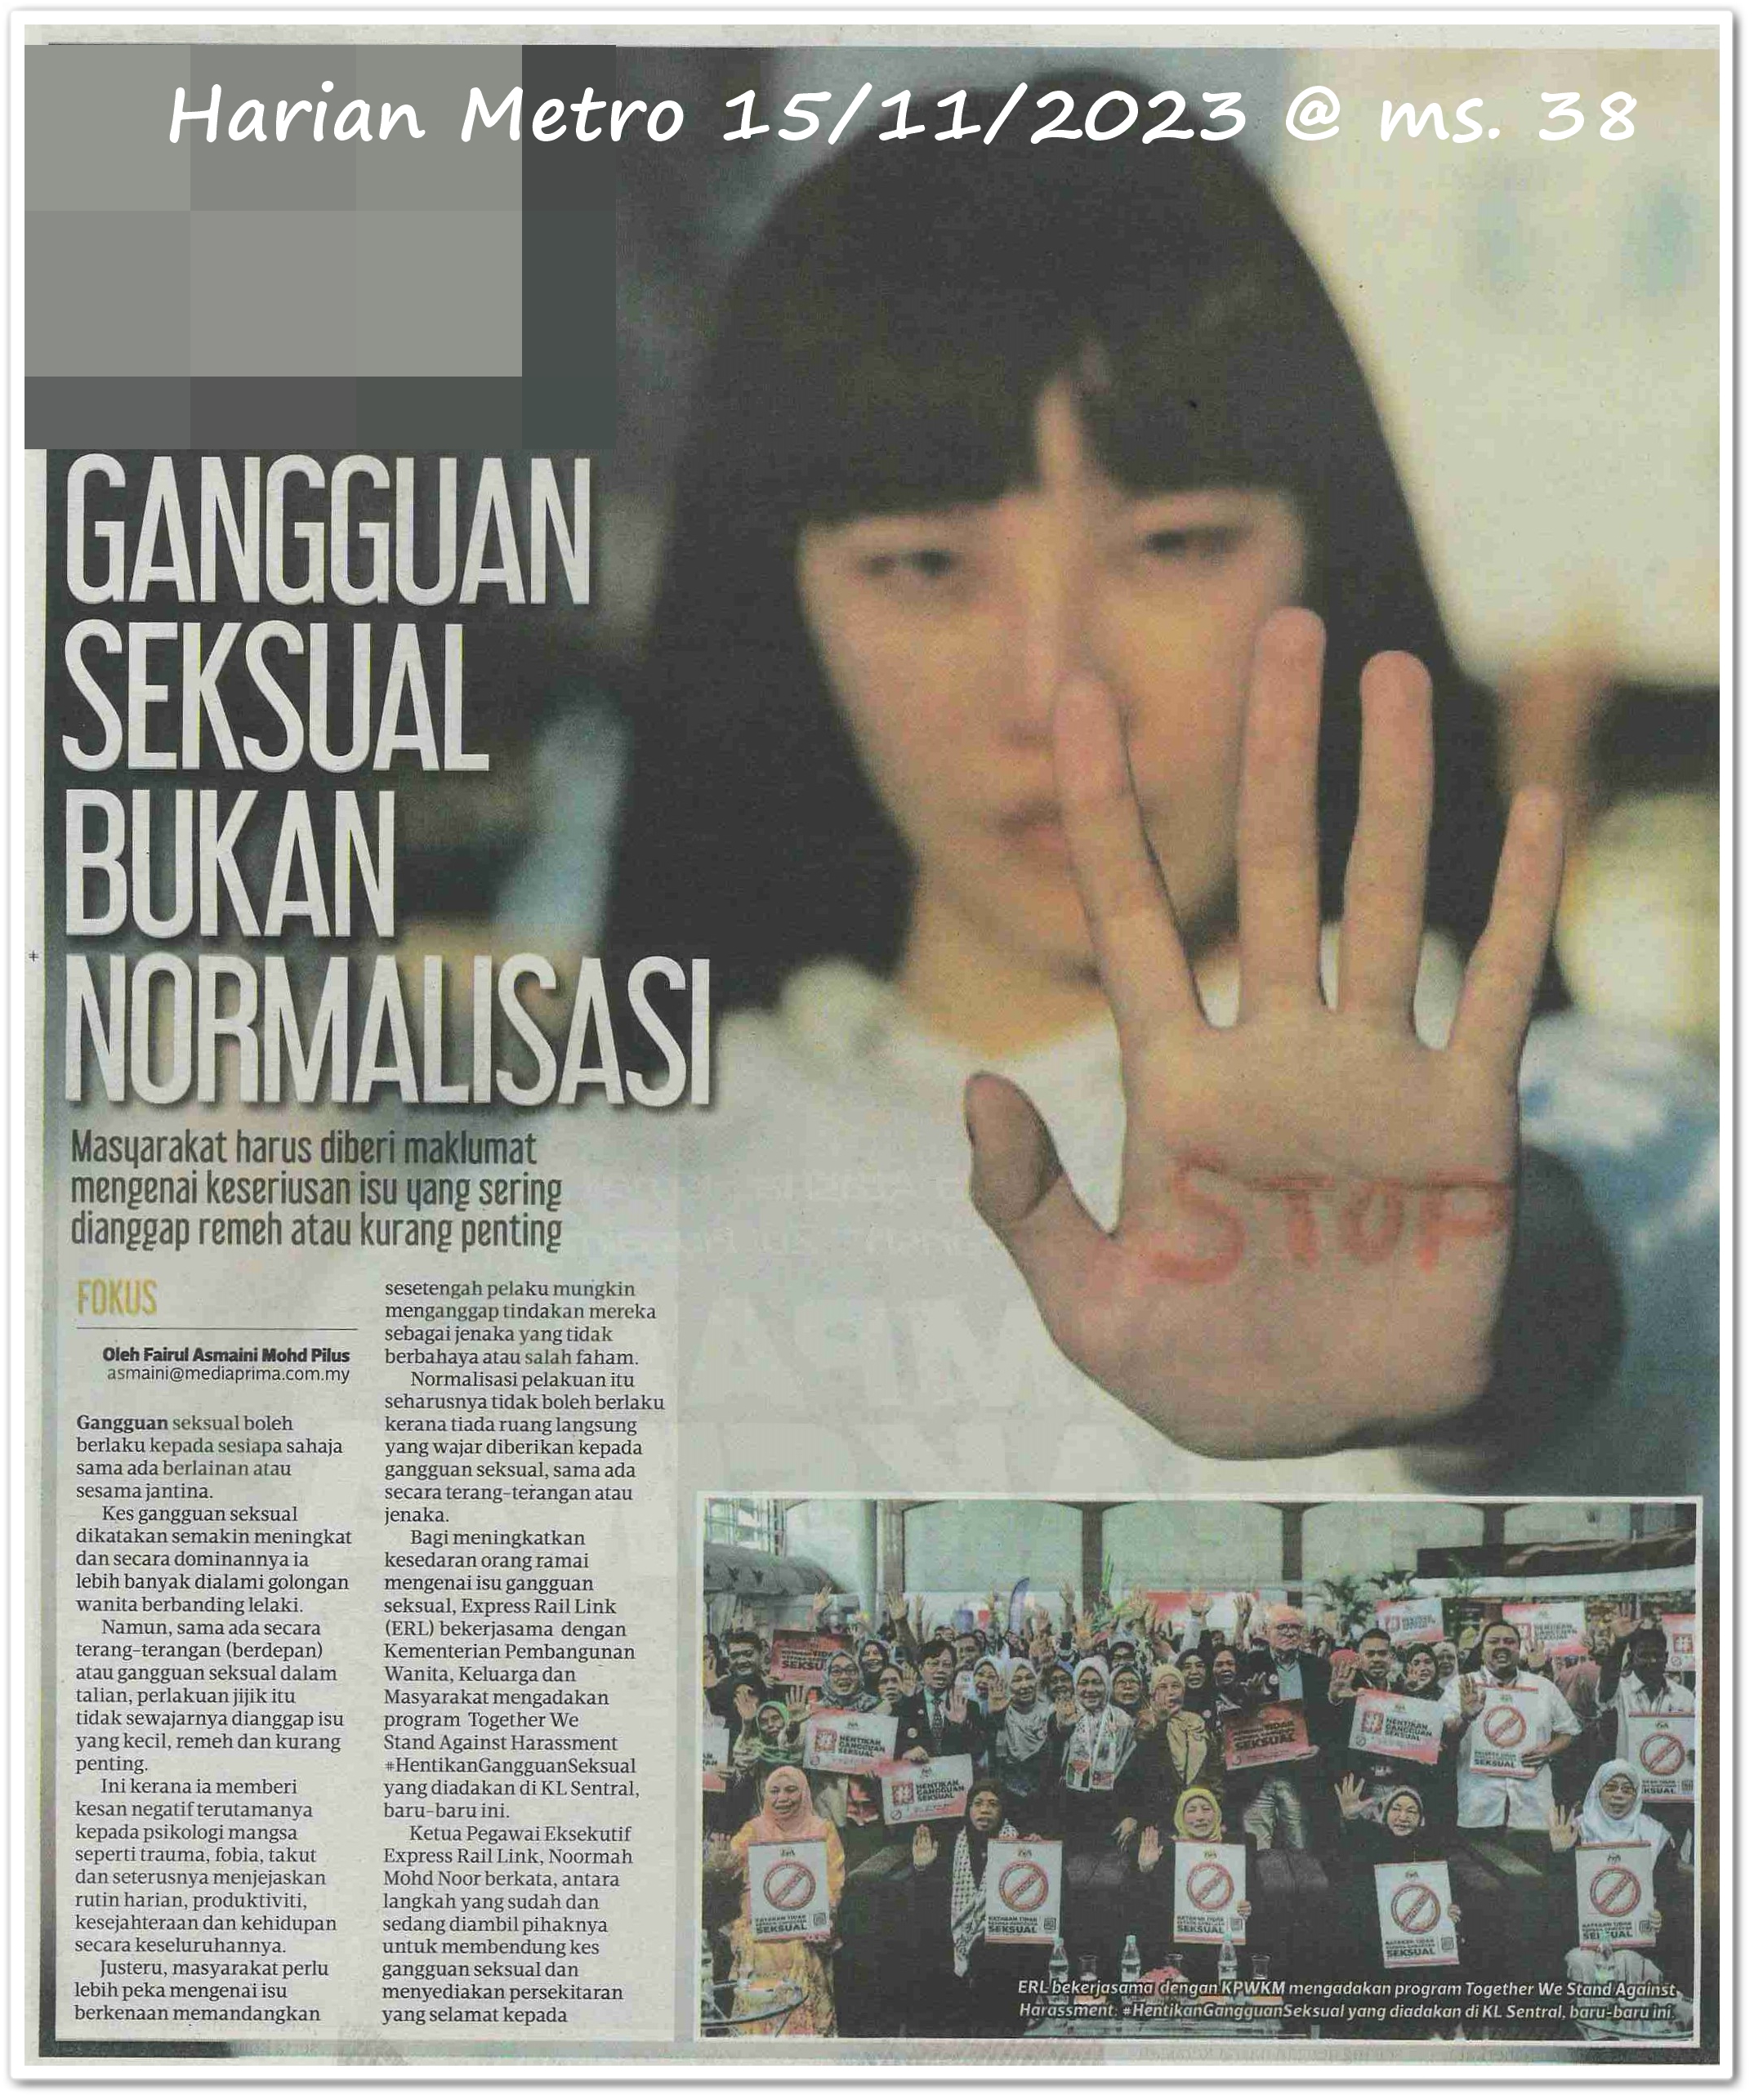 Gangguan seksual bukan normalisasi - Keratan akhbar Harian Metro 15 November 2023